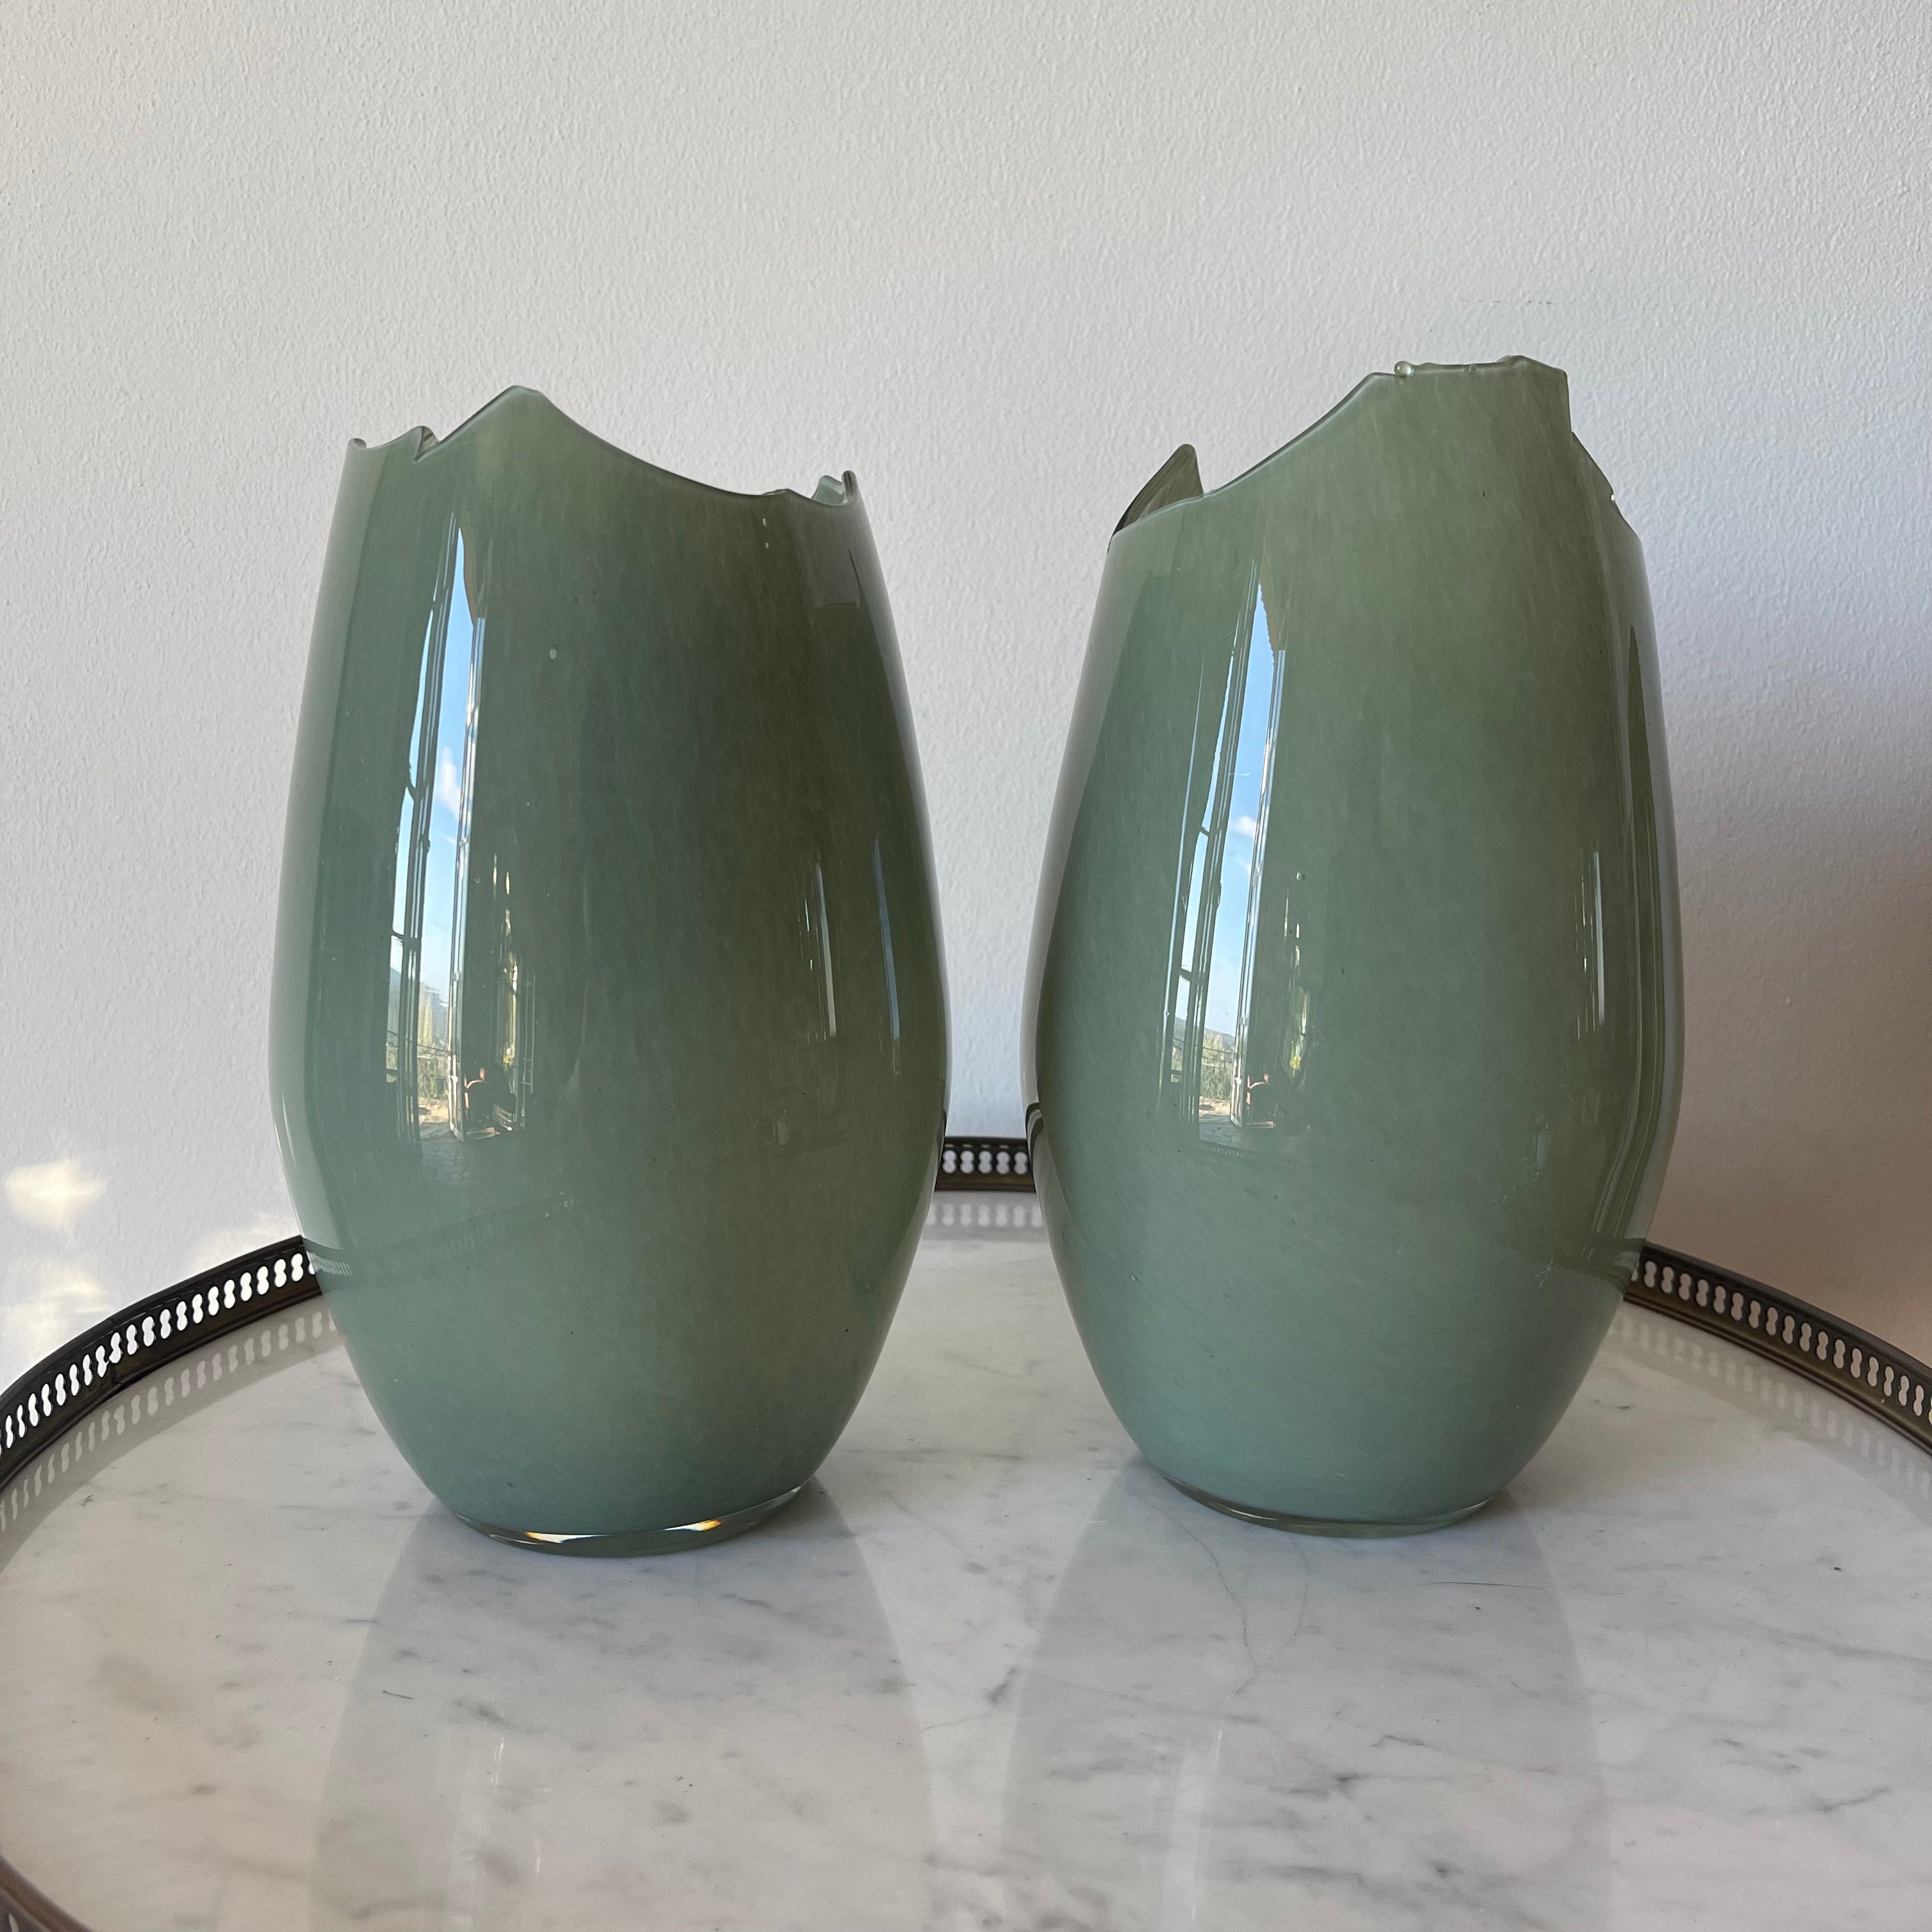 Irregular green vases